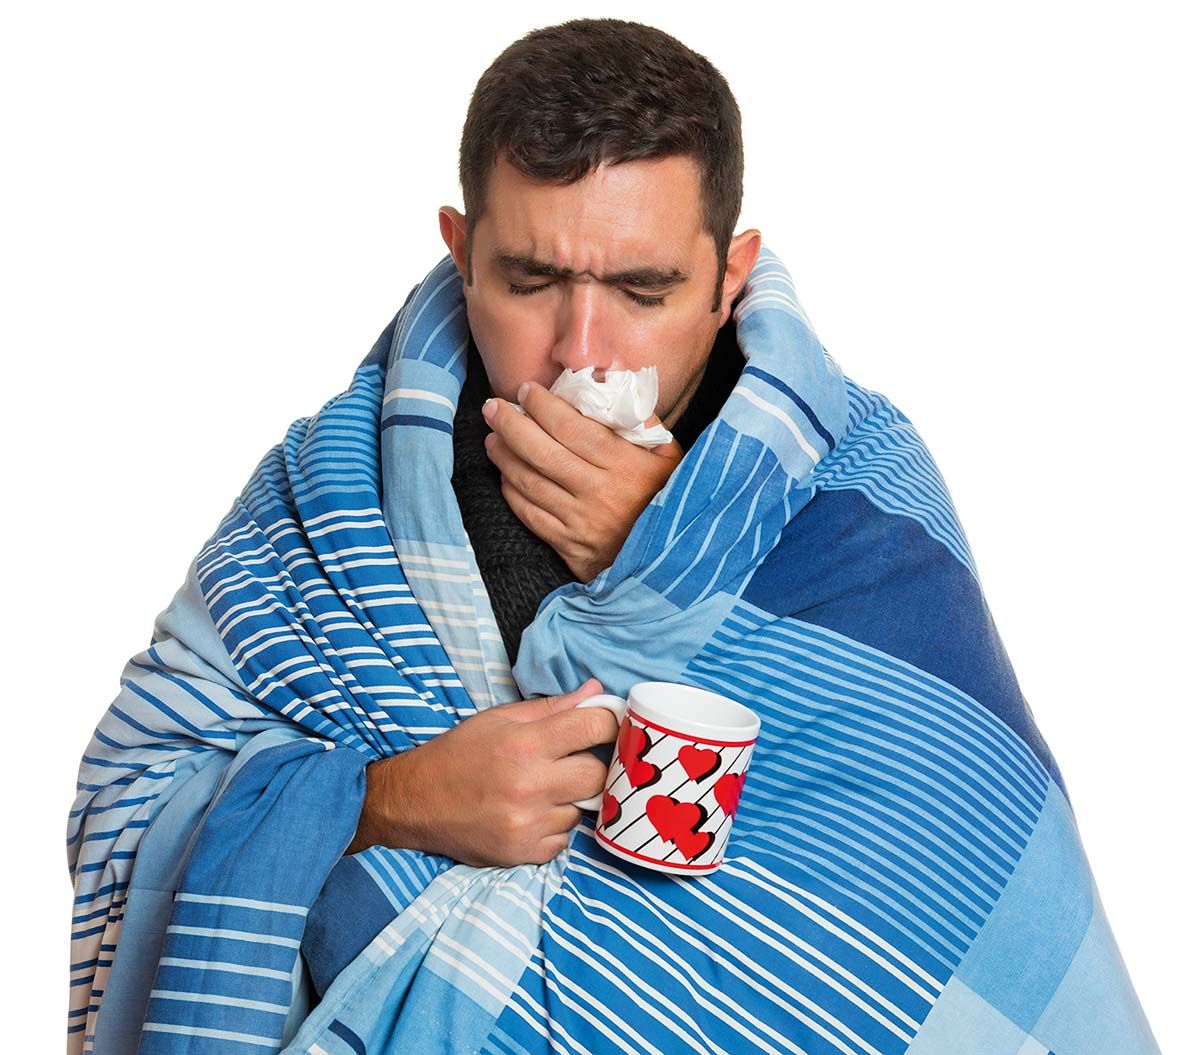 Epidemiologul Emilian Popovici: „Gripa poate genera complicații și la oameni sănătoși”